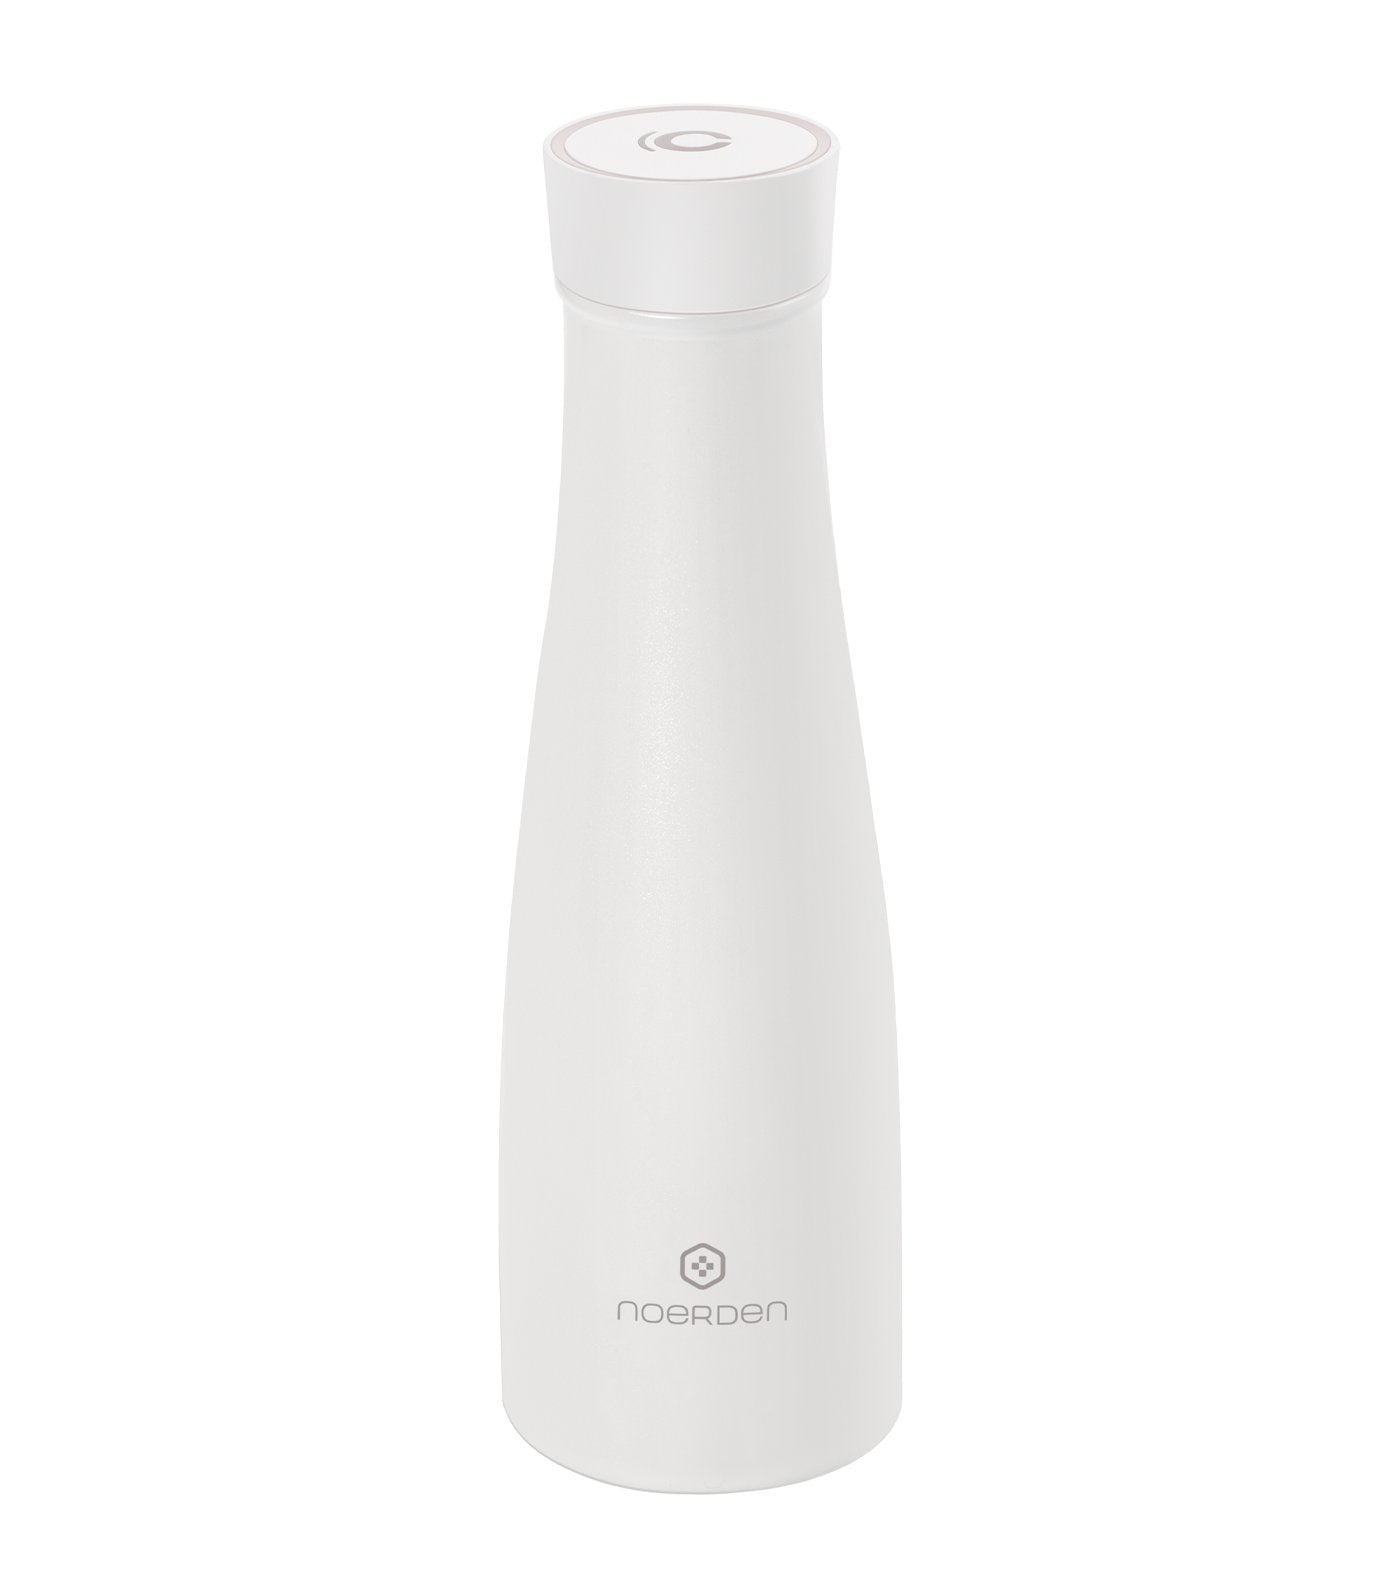 Noerden LIZ Smart Bottle, White - 480ml